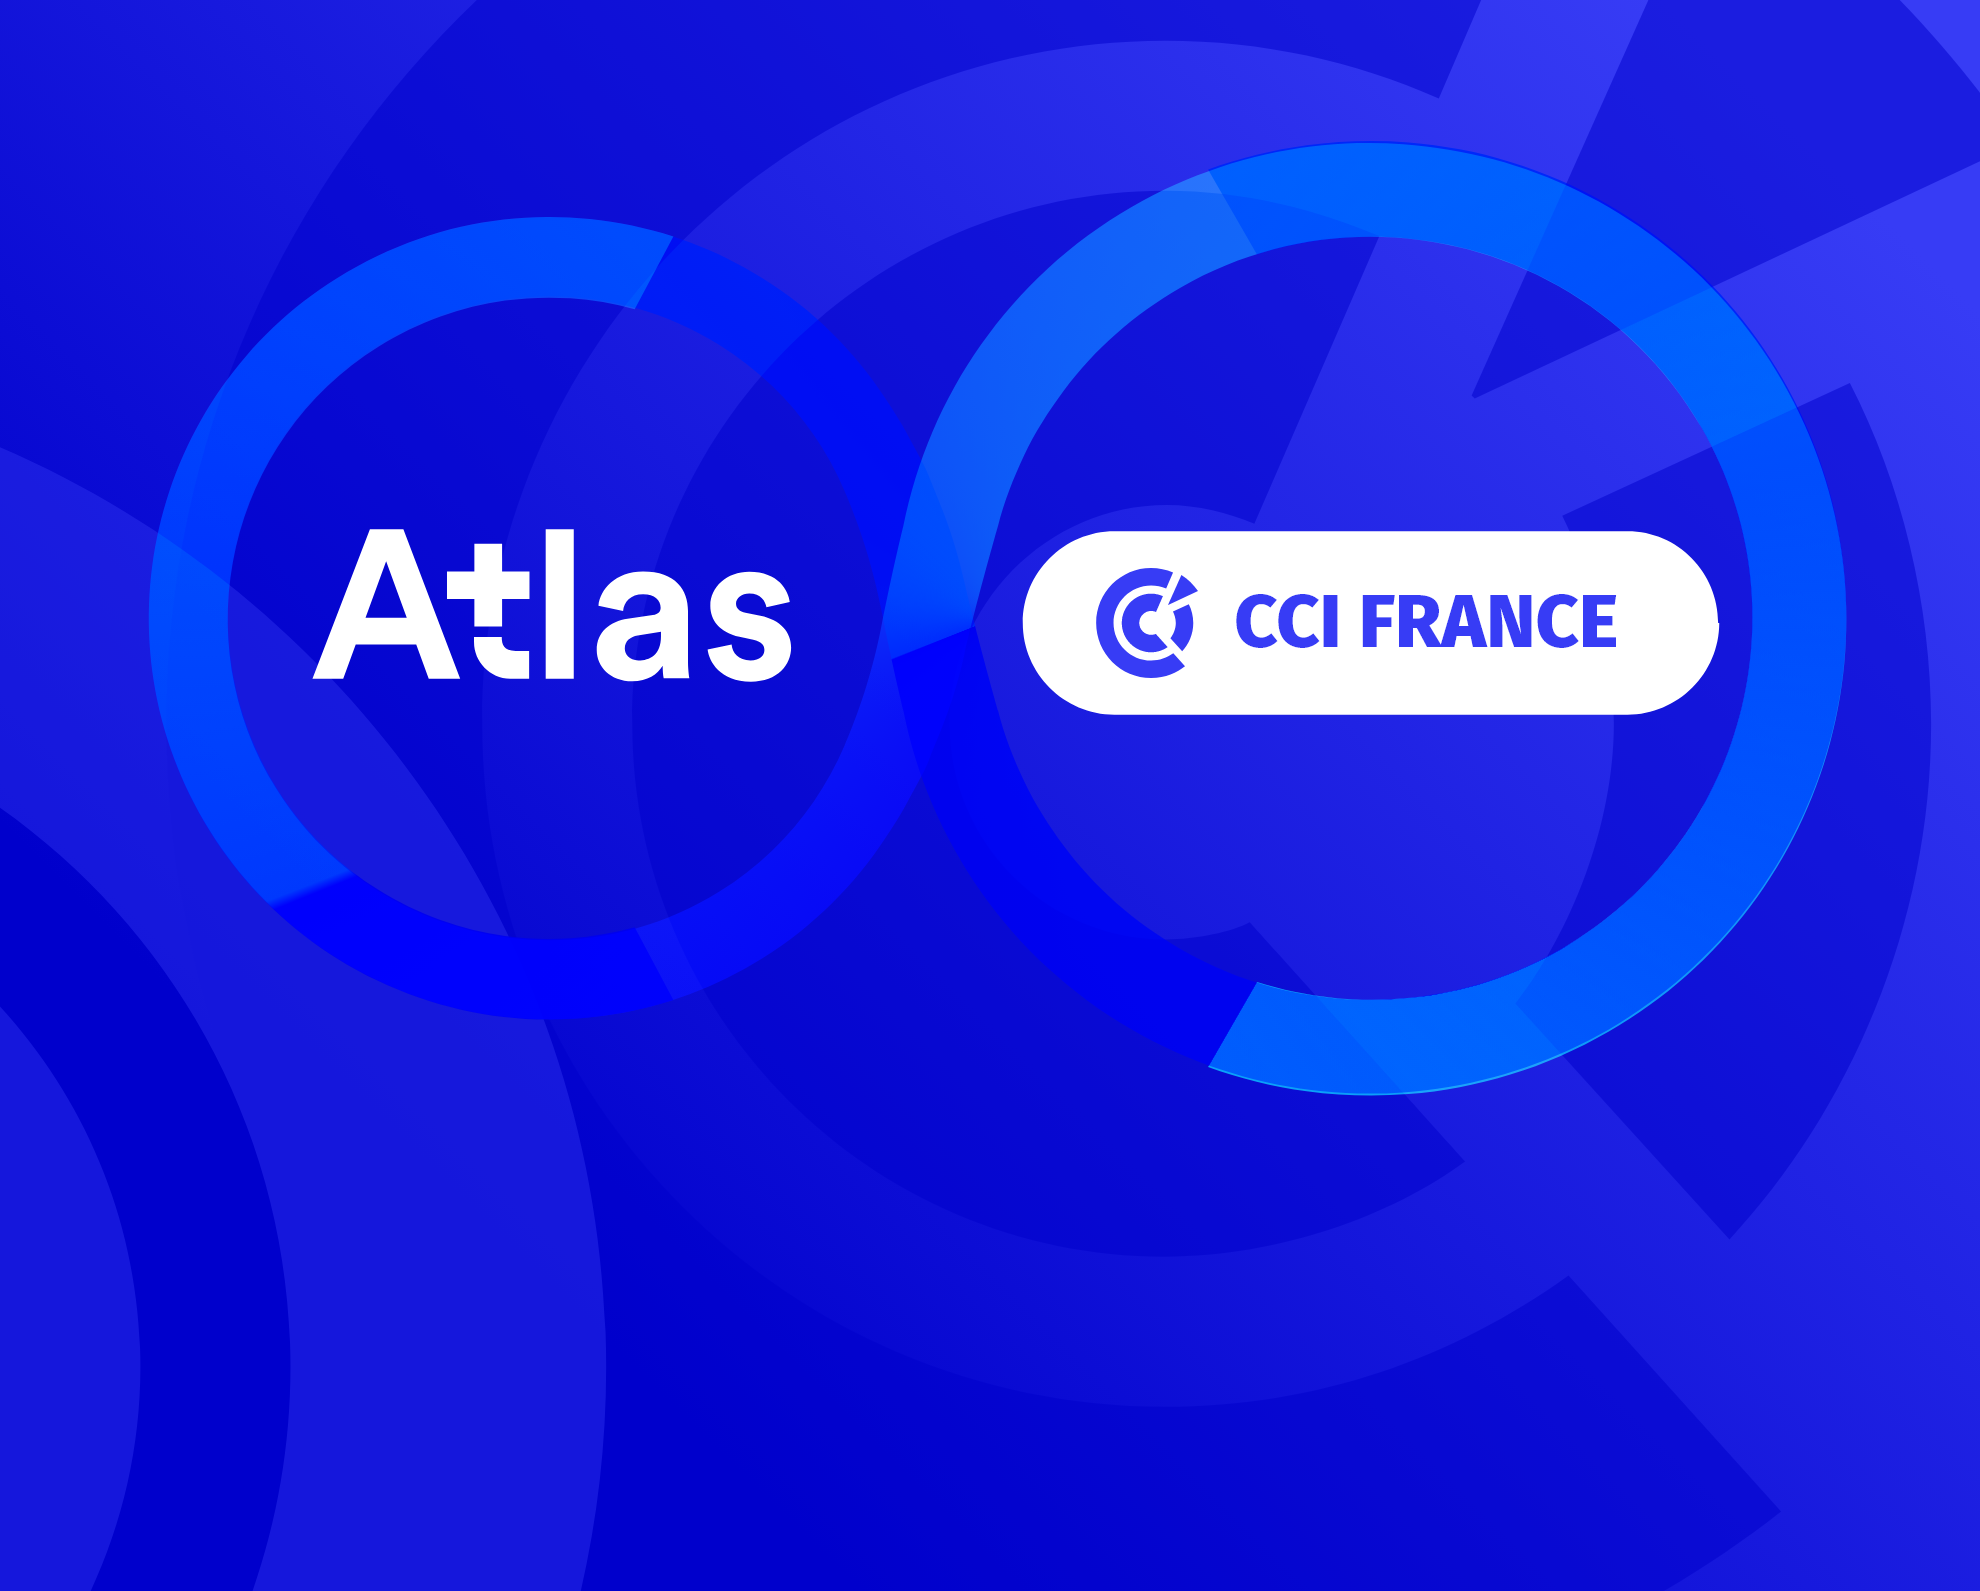 partenariat atlas et cci france